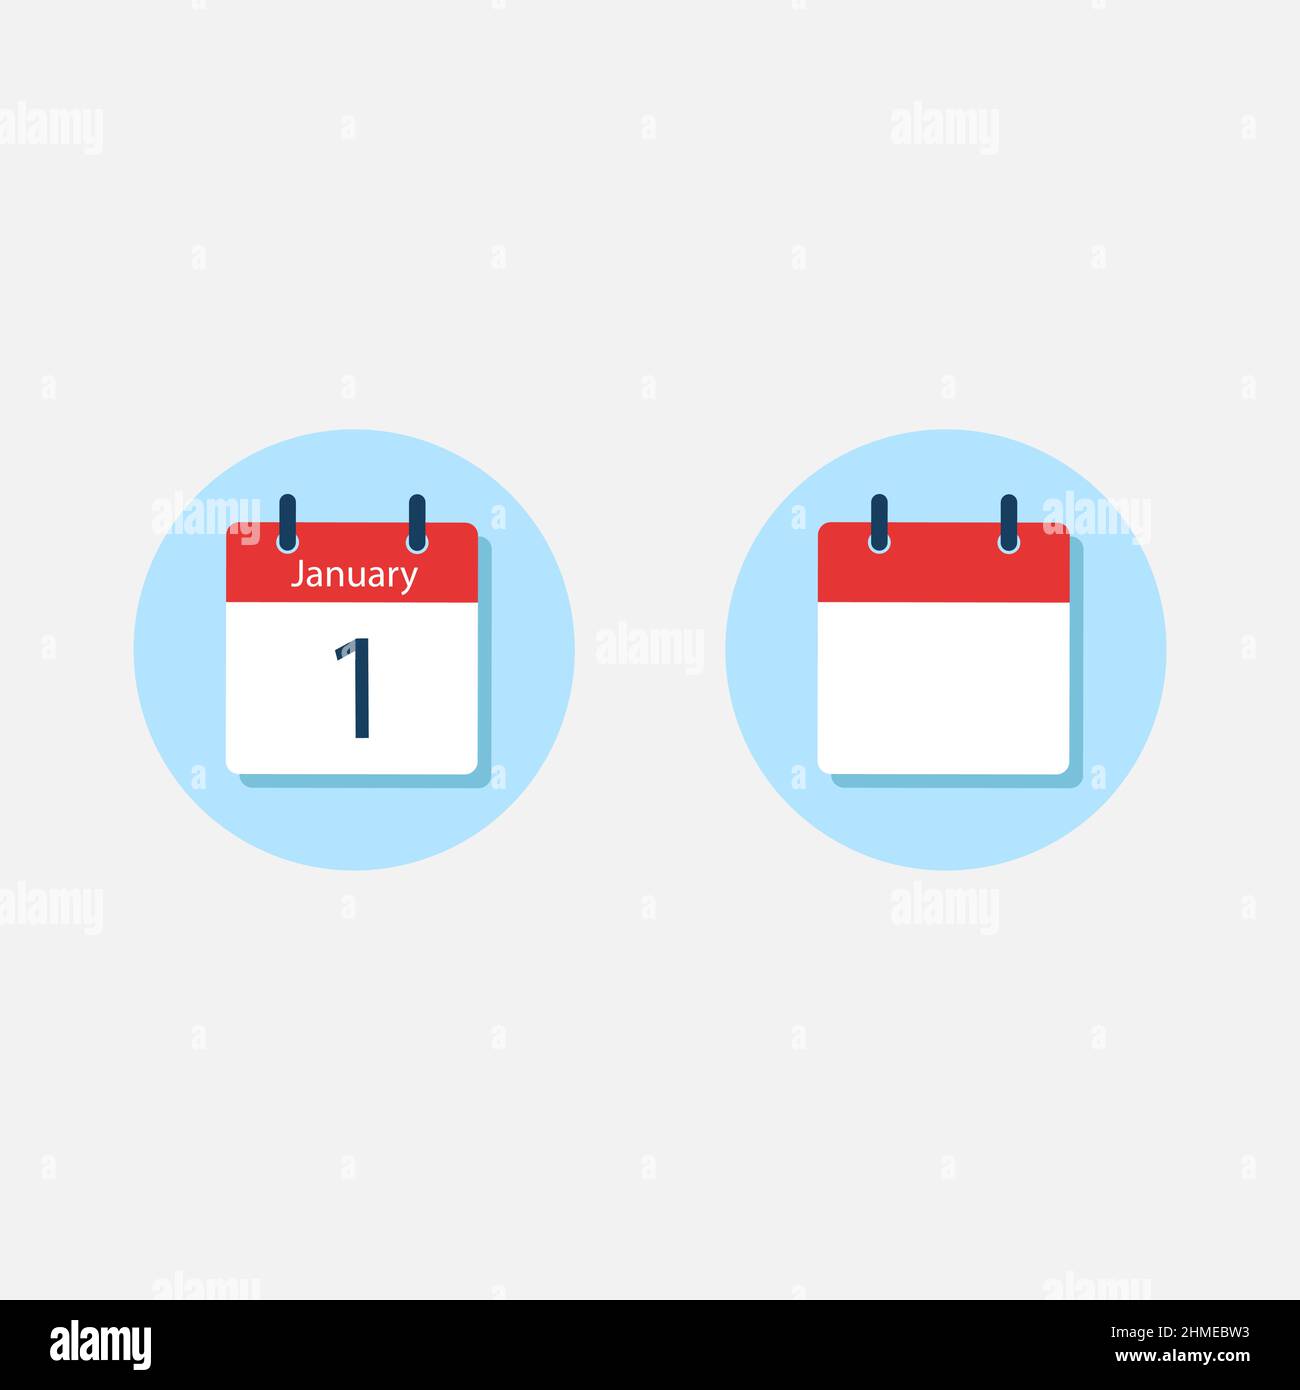 Icona bianca del calendario giornaliero in stile Flat Design. Illustrazione vettoriale isolata facile da modificare. Illustrazione Vettoriale